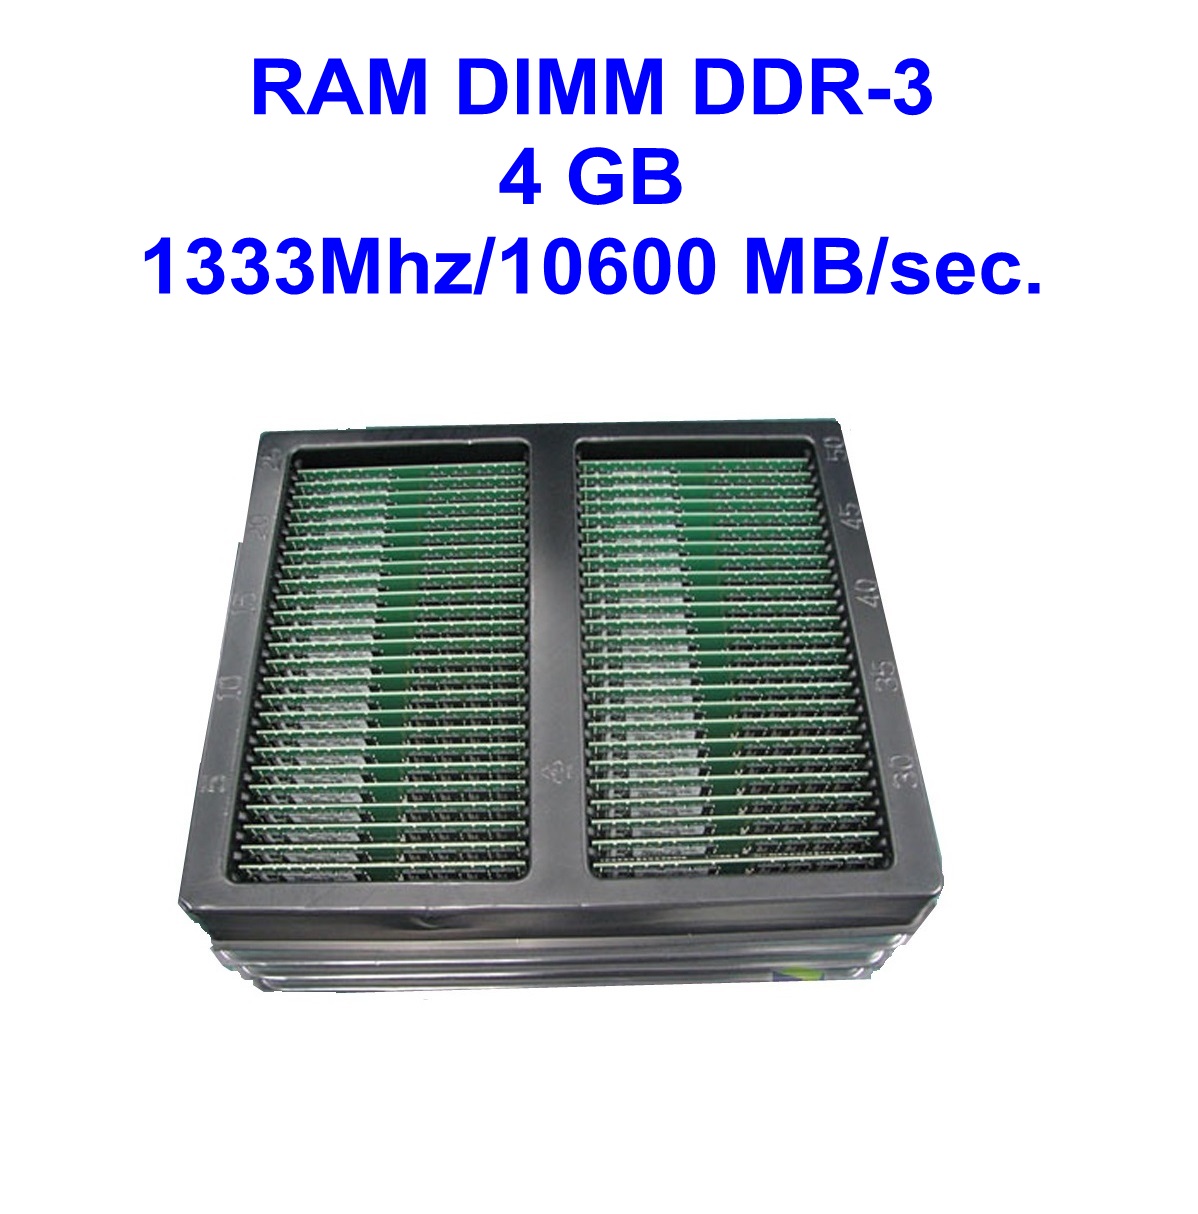 DIMM DDR-3 4 GB 1333Mhz/10600 MB/sec.